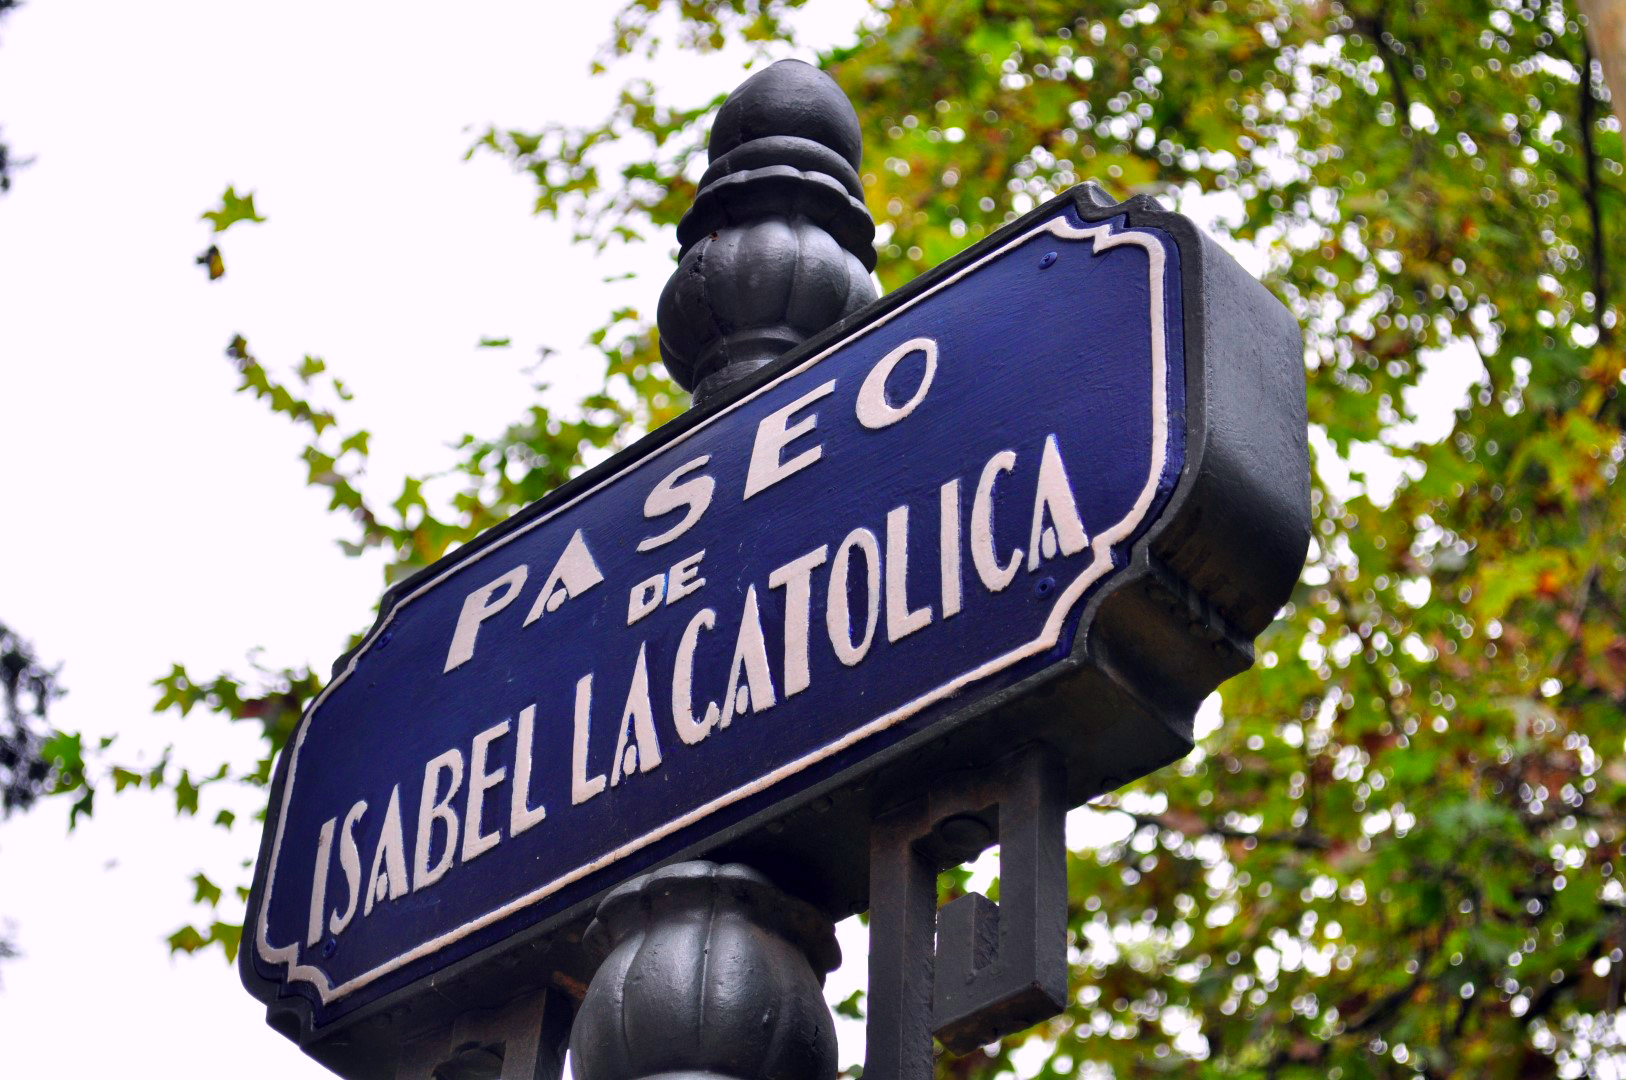 Qué ver en Sevilla, España - What to see in Sevilla, Spain